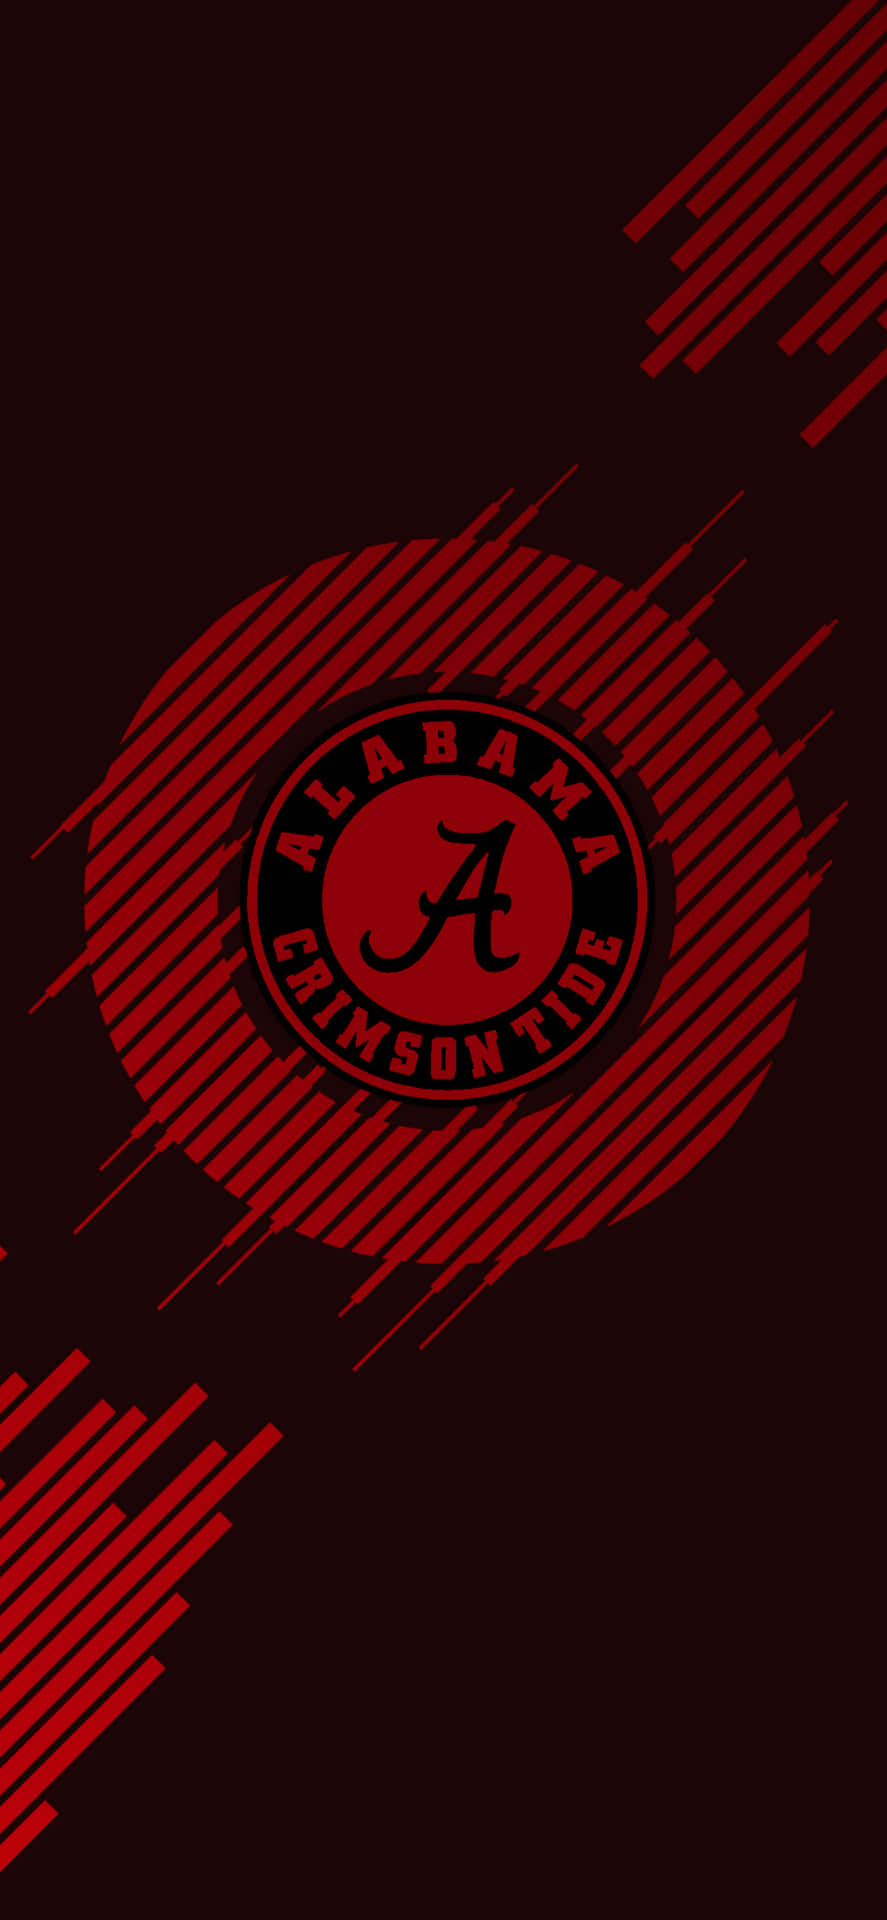 Lyk op din Iphone med en Alabama Crimson Tide fodboldtapet. Wallpaper